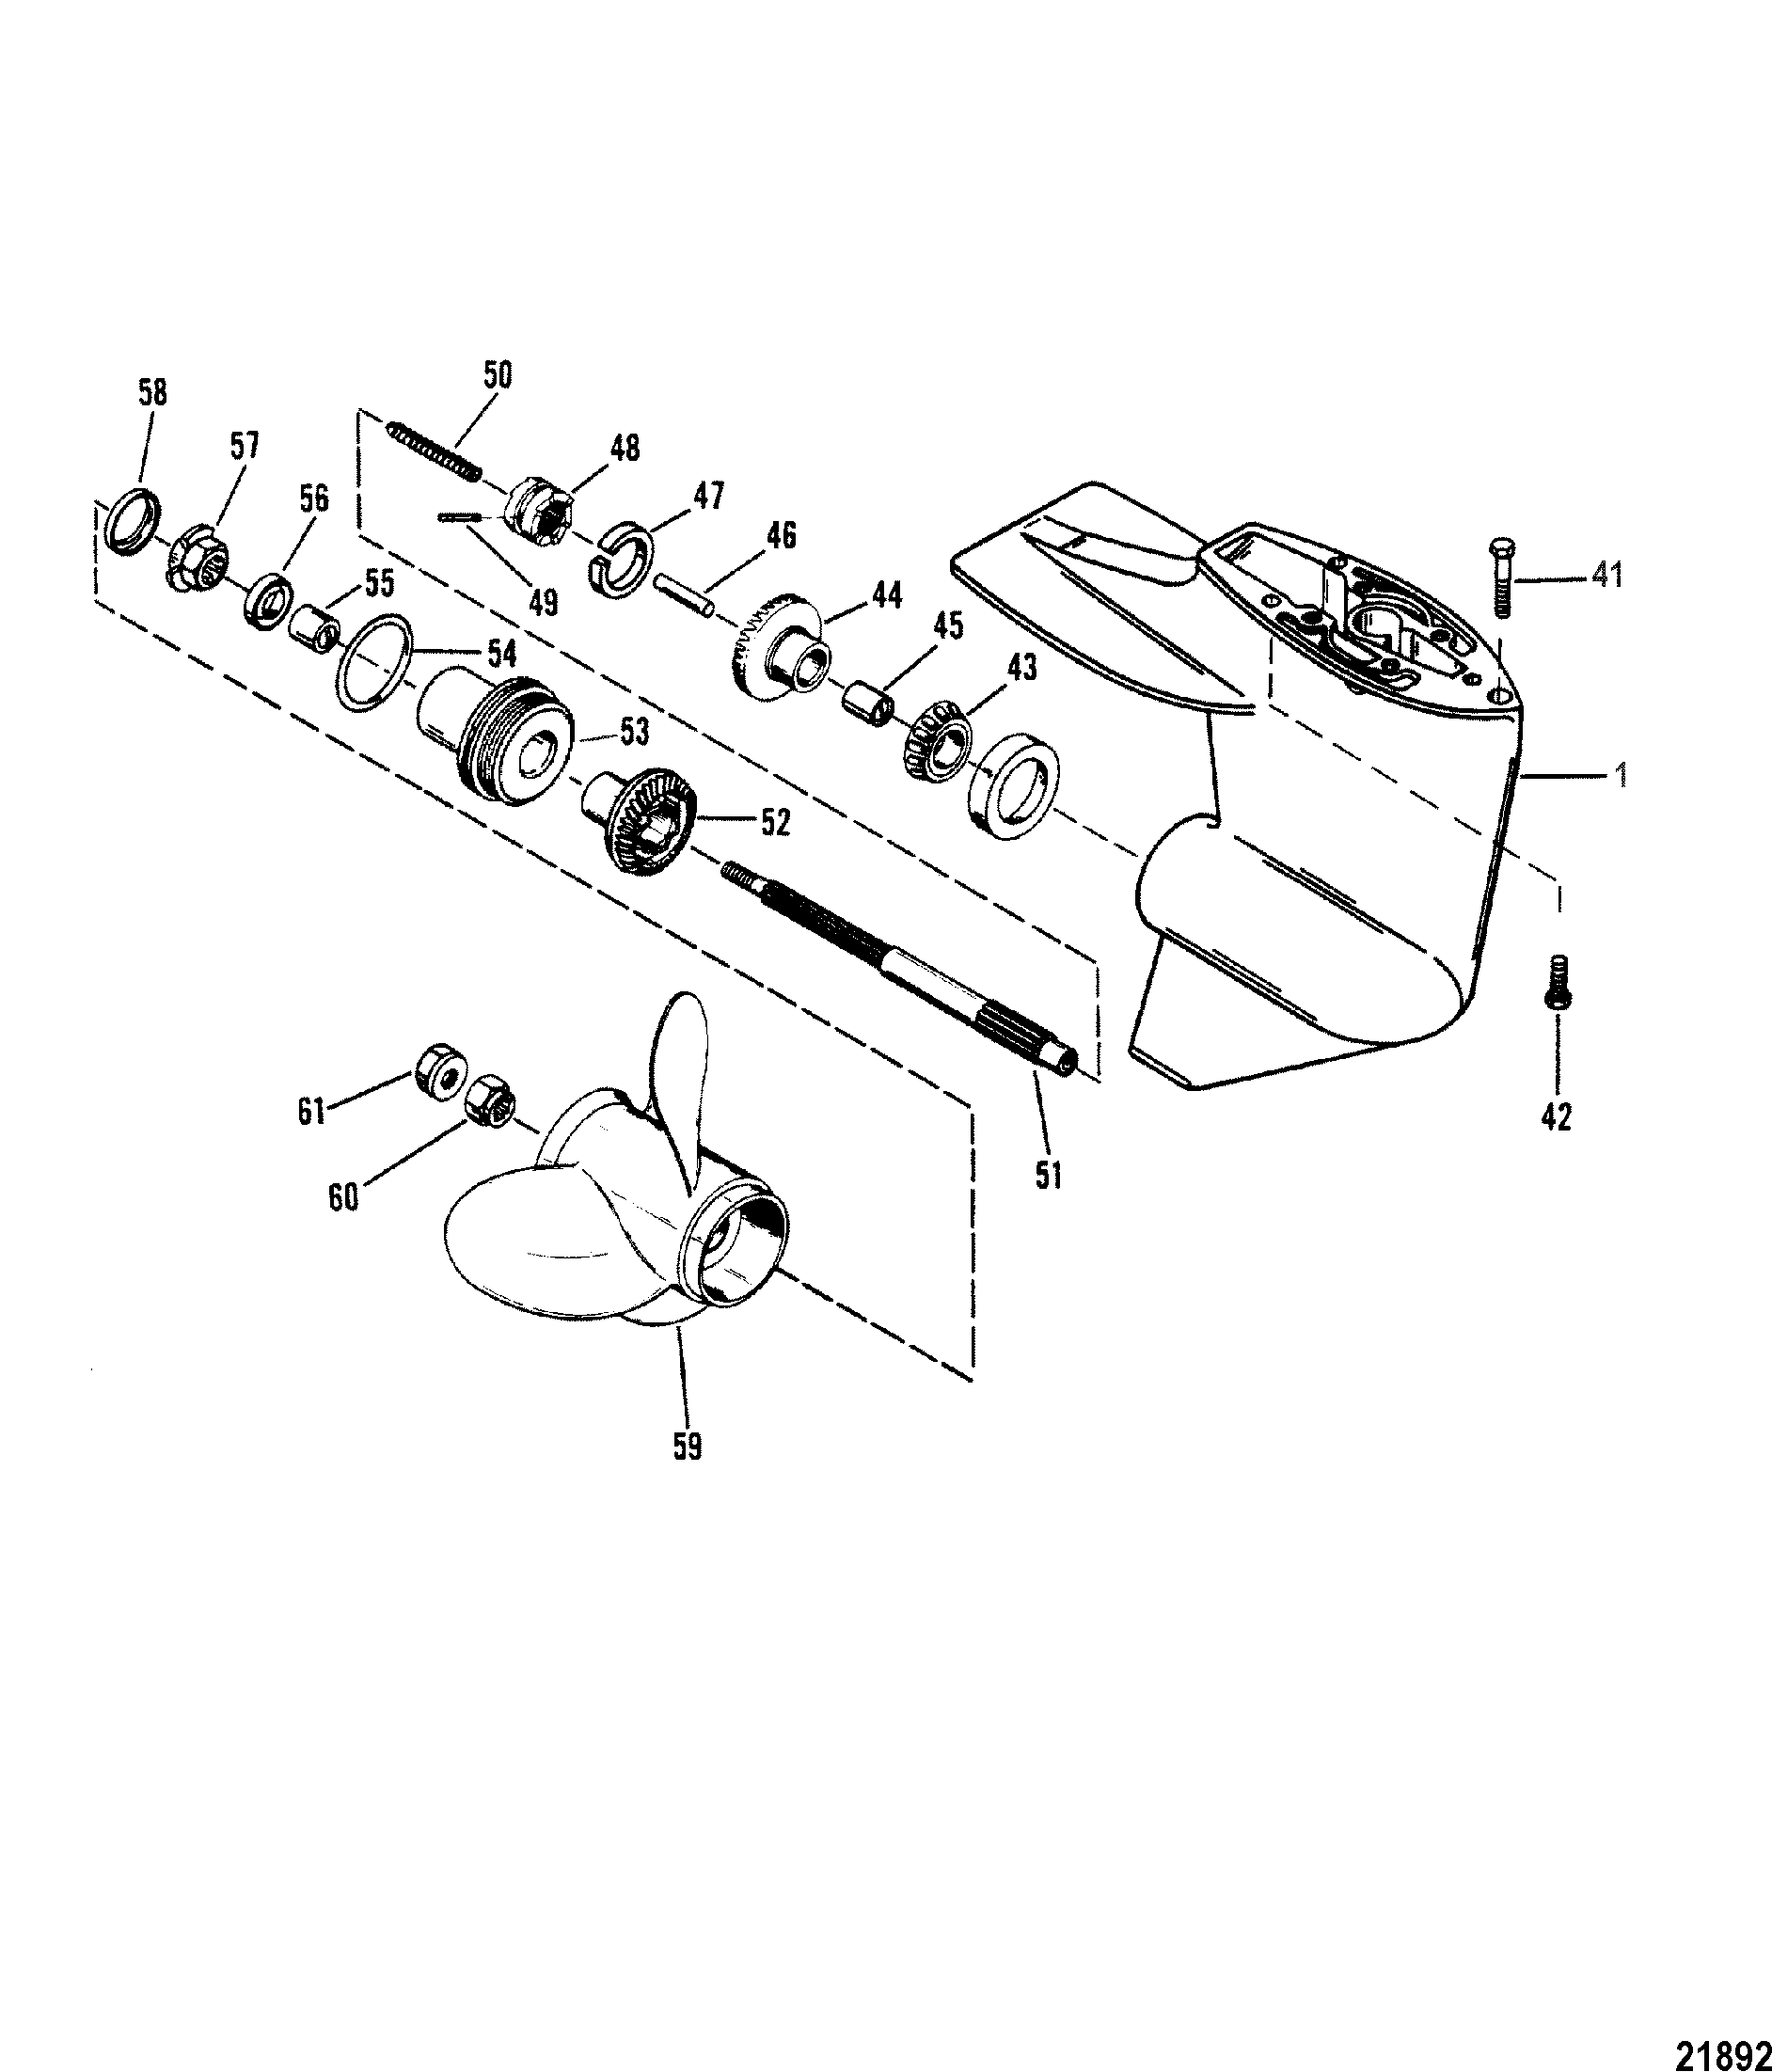 Gear Hsg(Propshaft)(Design I-Refer to Driveshaft Drawing)